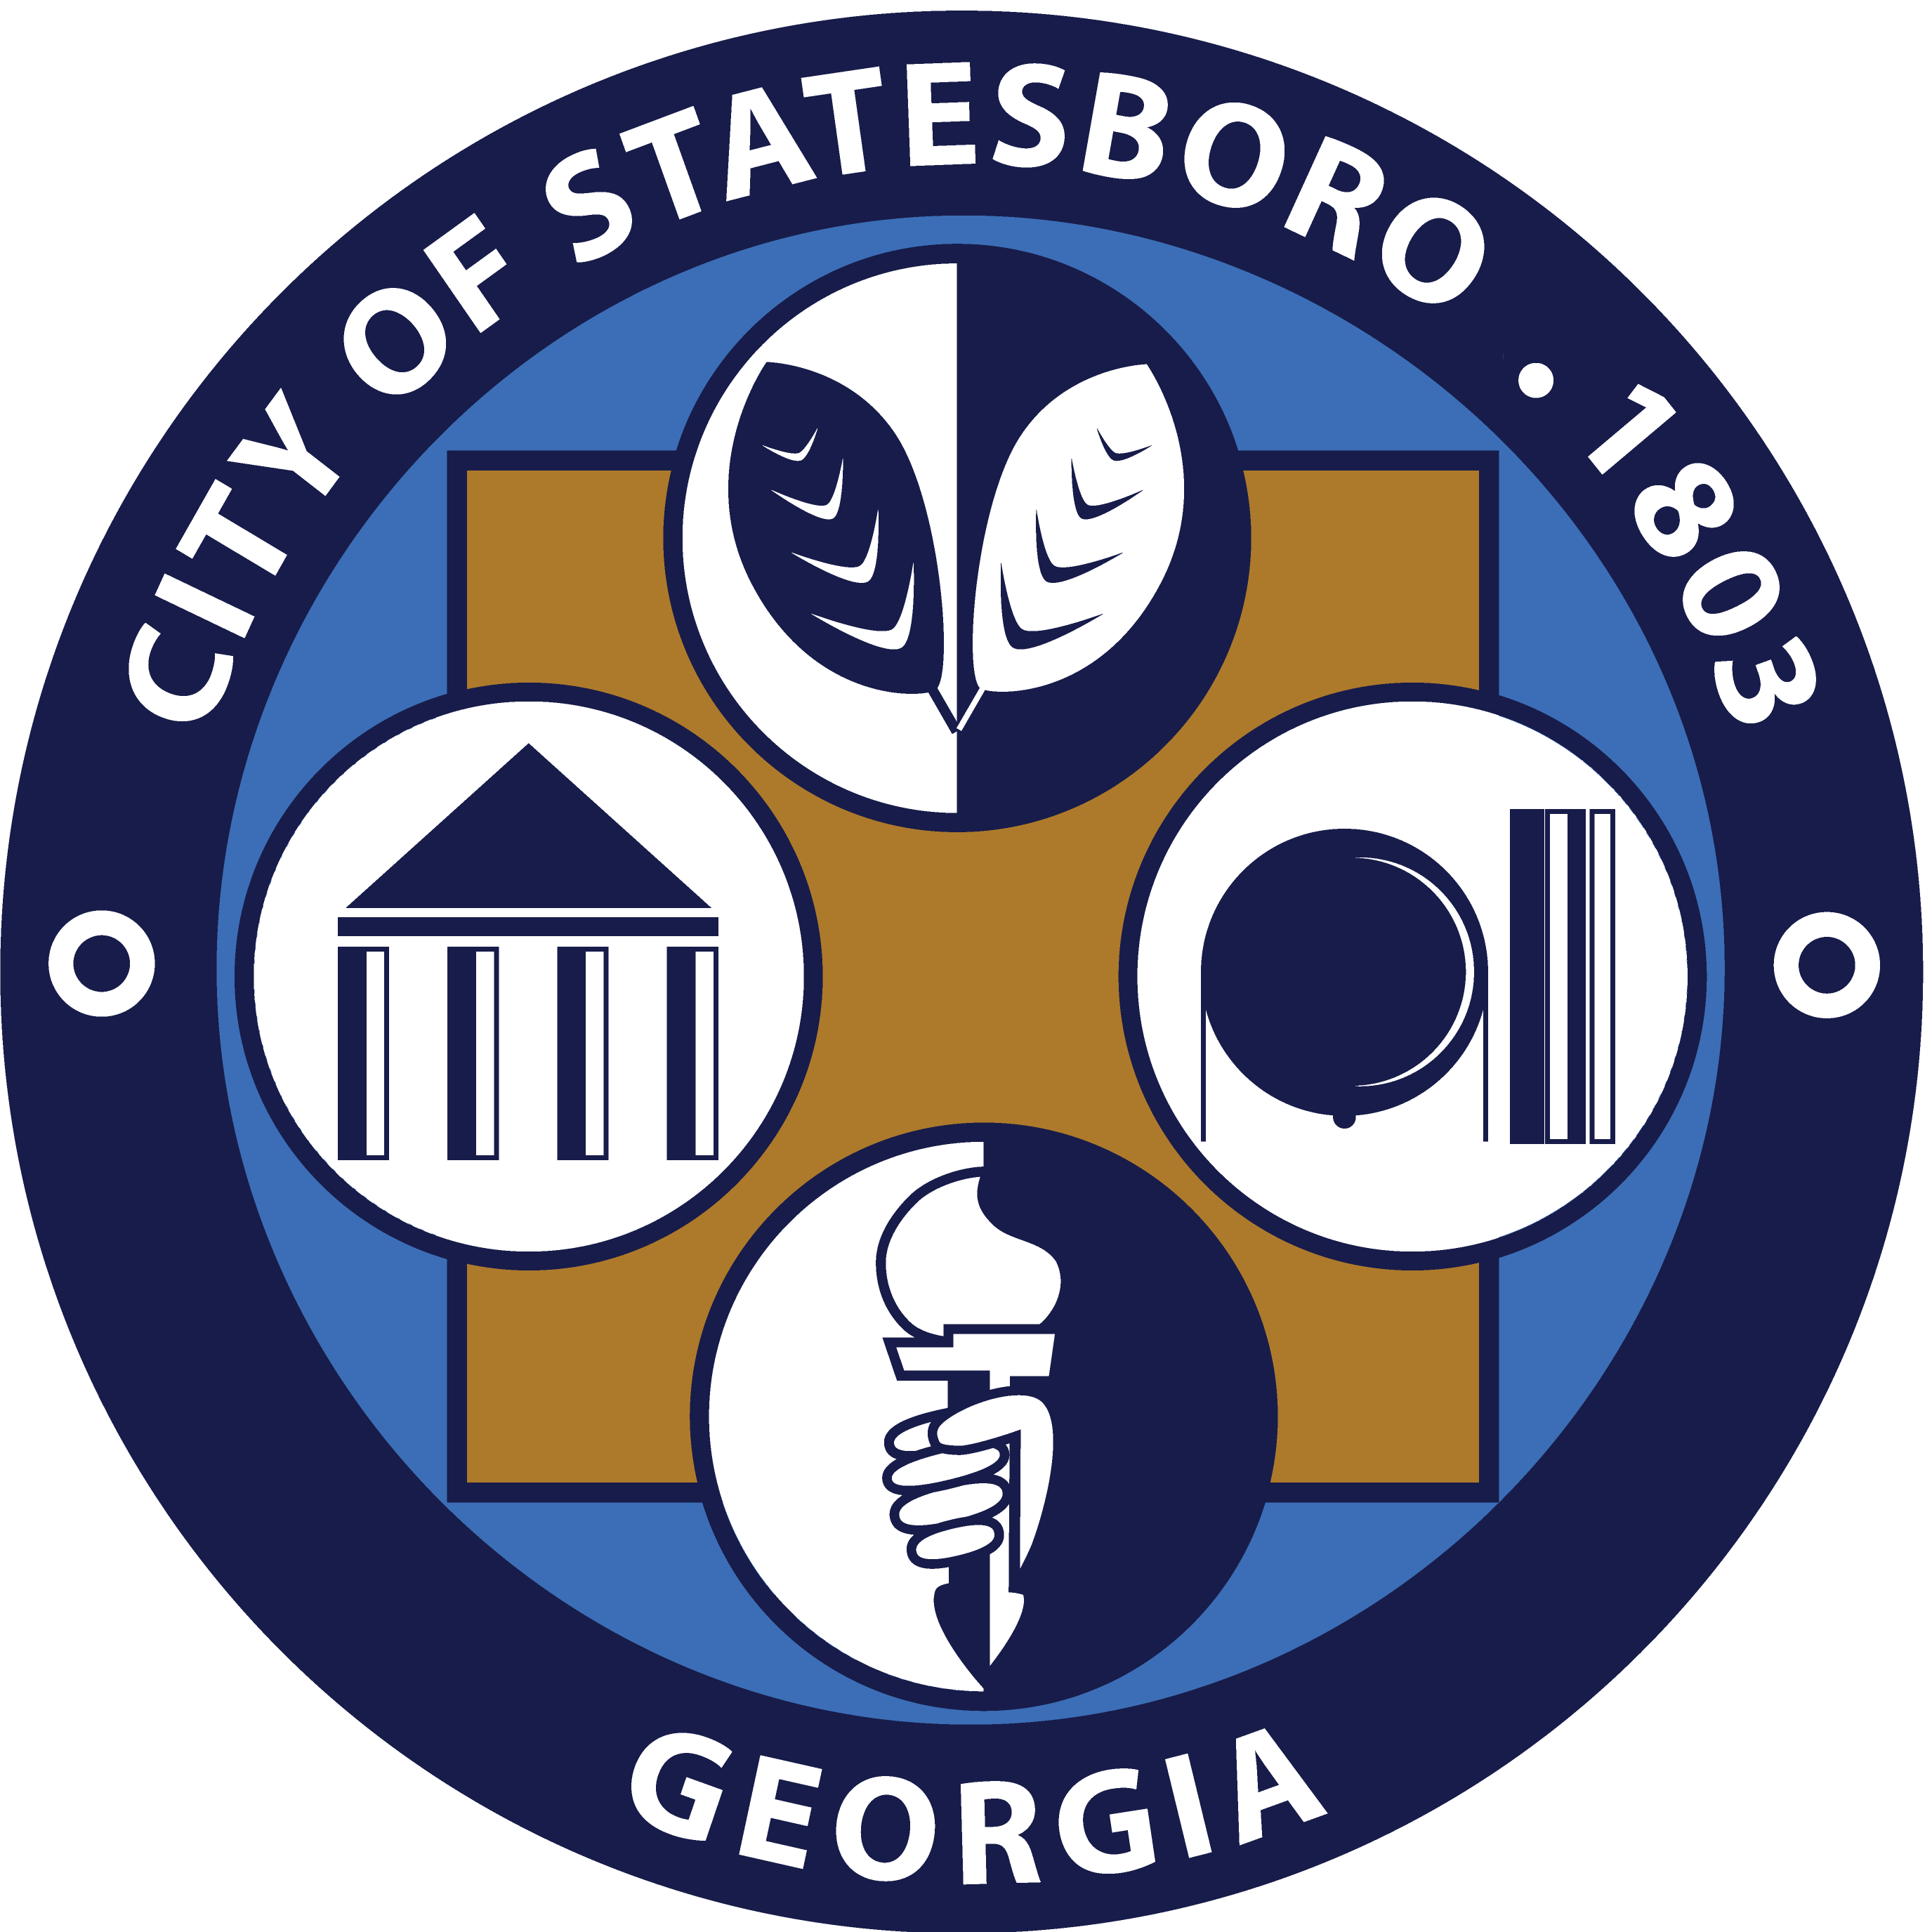 City of Statesboro, GA logo in color